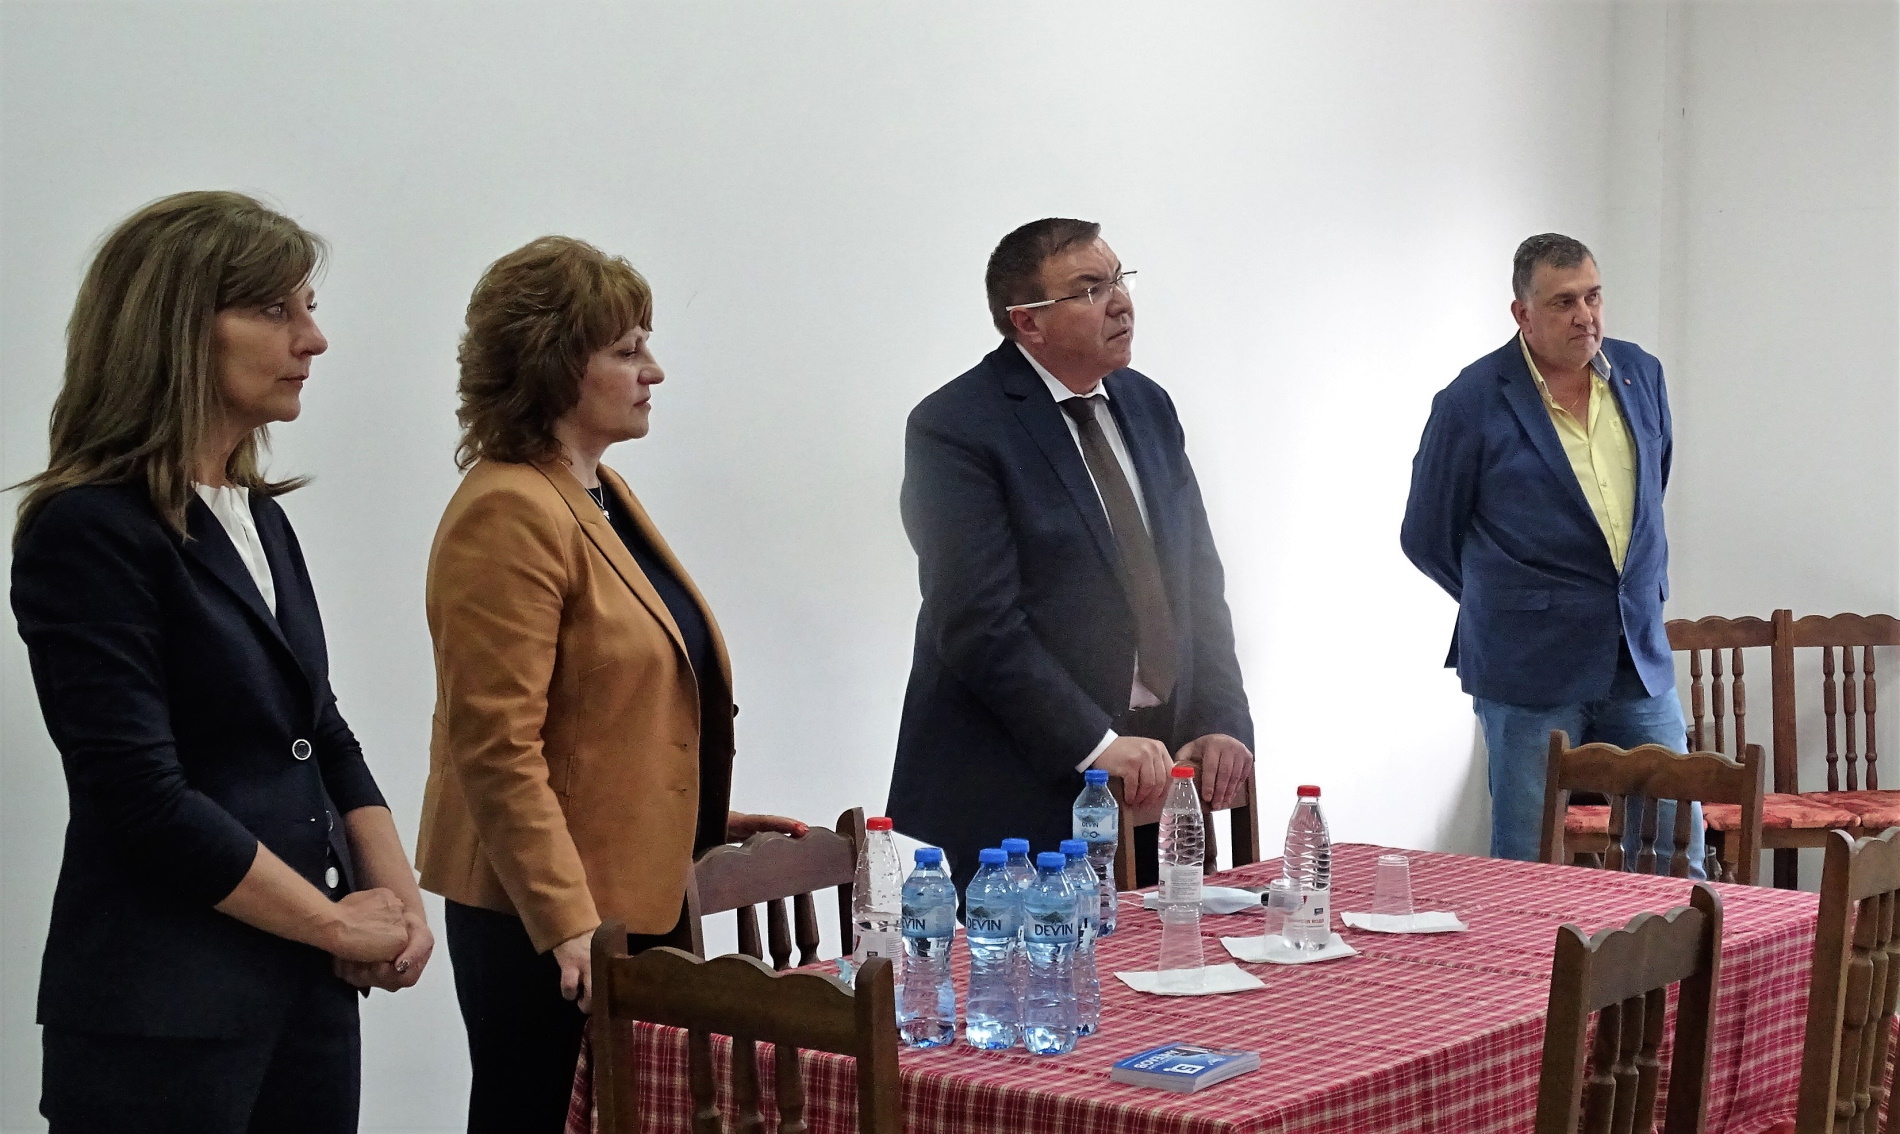 Представители на бизнеса от Търново пред ГЕРБ: България не бива да влиза в поредица от избори, нужно е работещо правителство